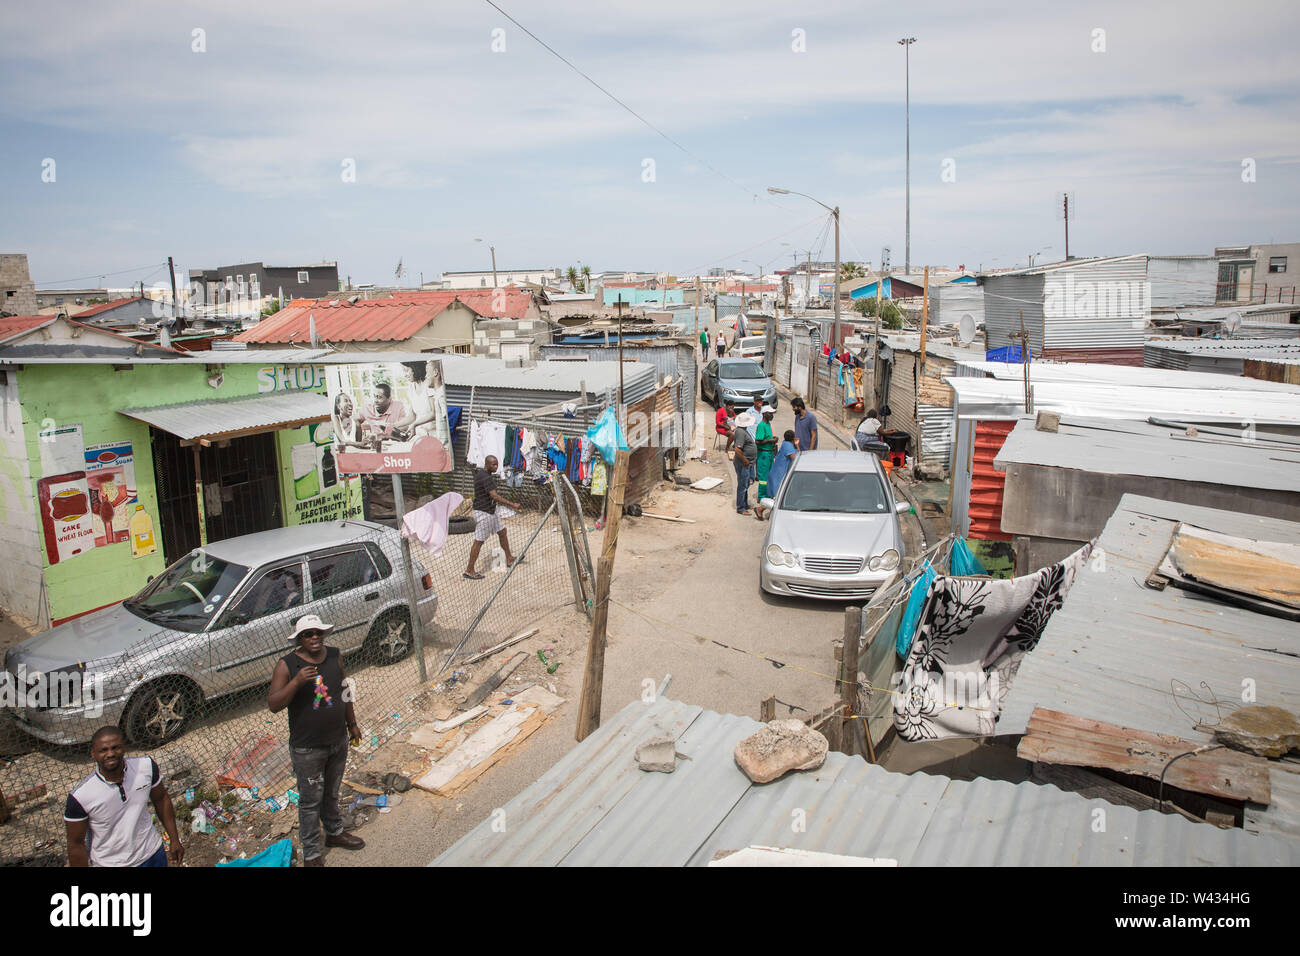 Les résidents de Joe Slovo Règlement informel, Cape Town, Western Cape, Afrique du Sud ont une situation de vie précaire sous la menace d'expulsions forcées Banque D'Images